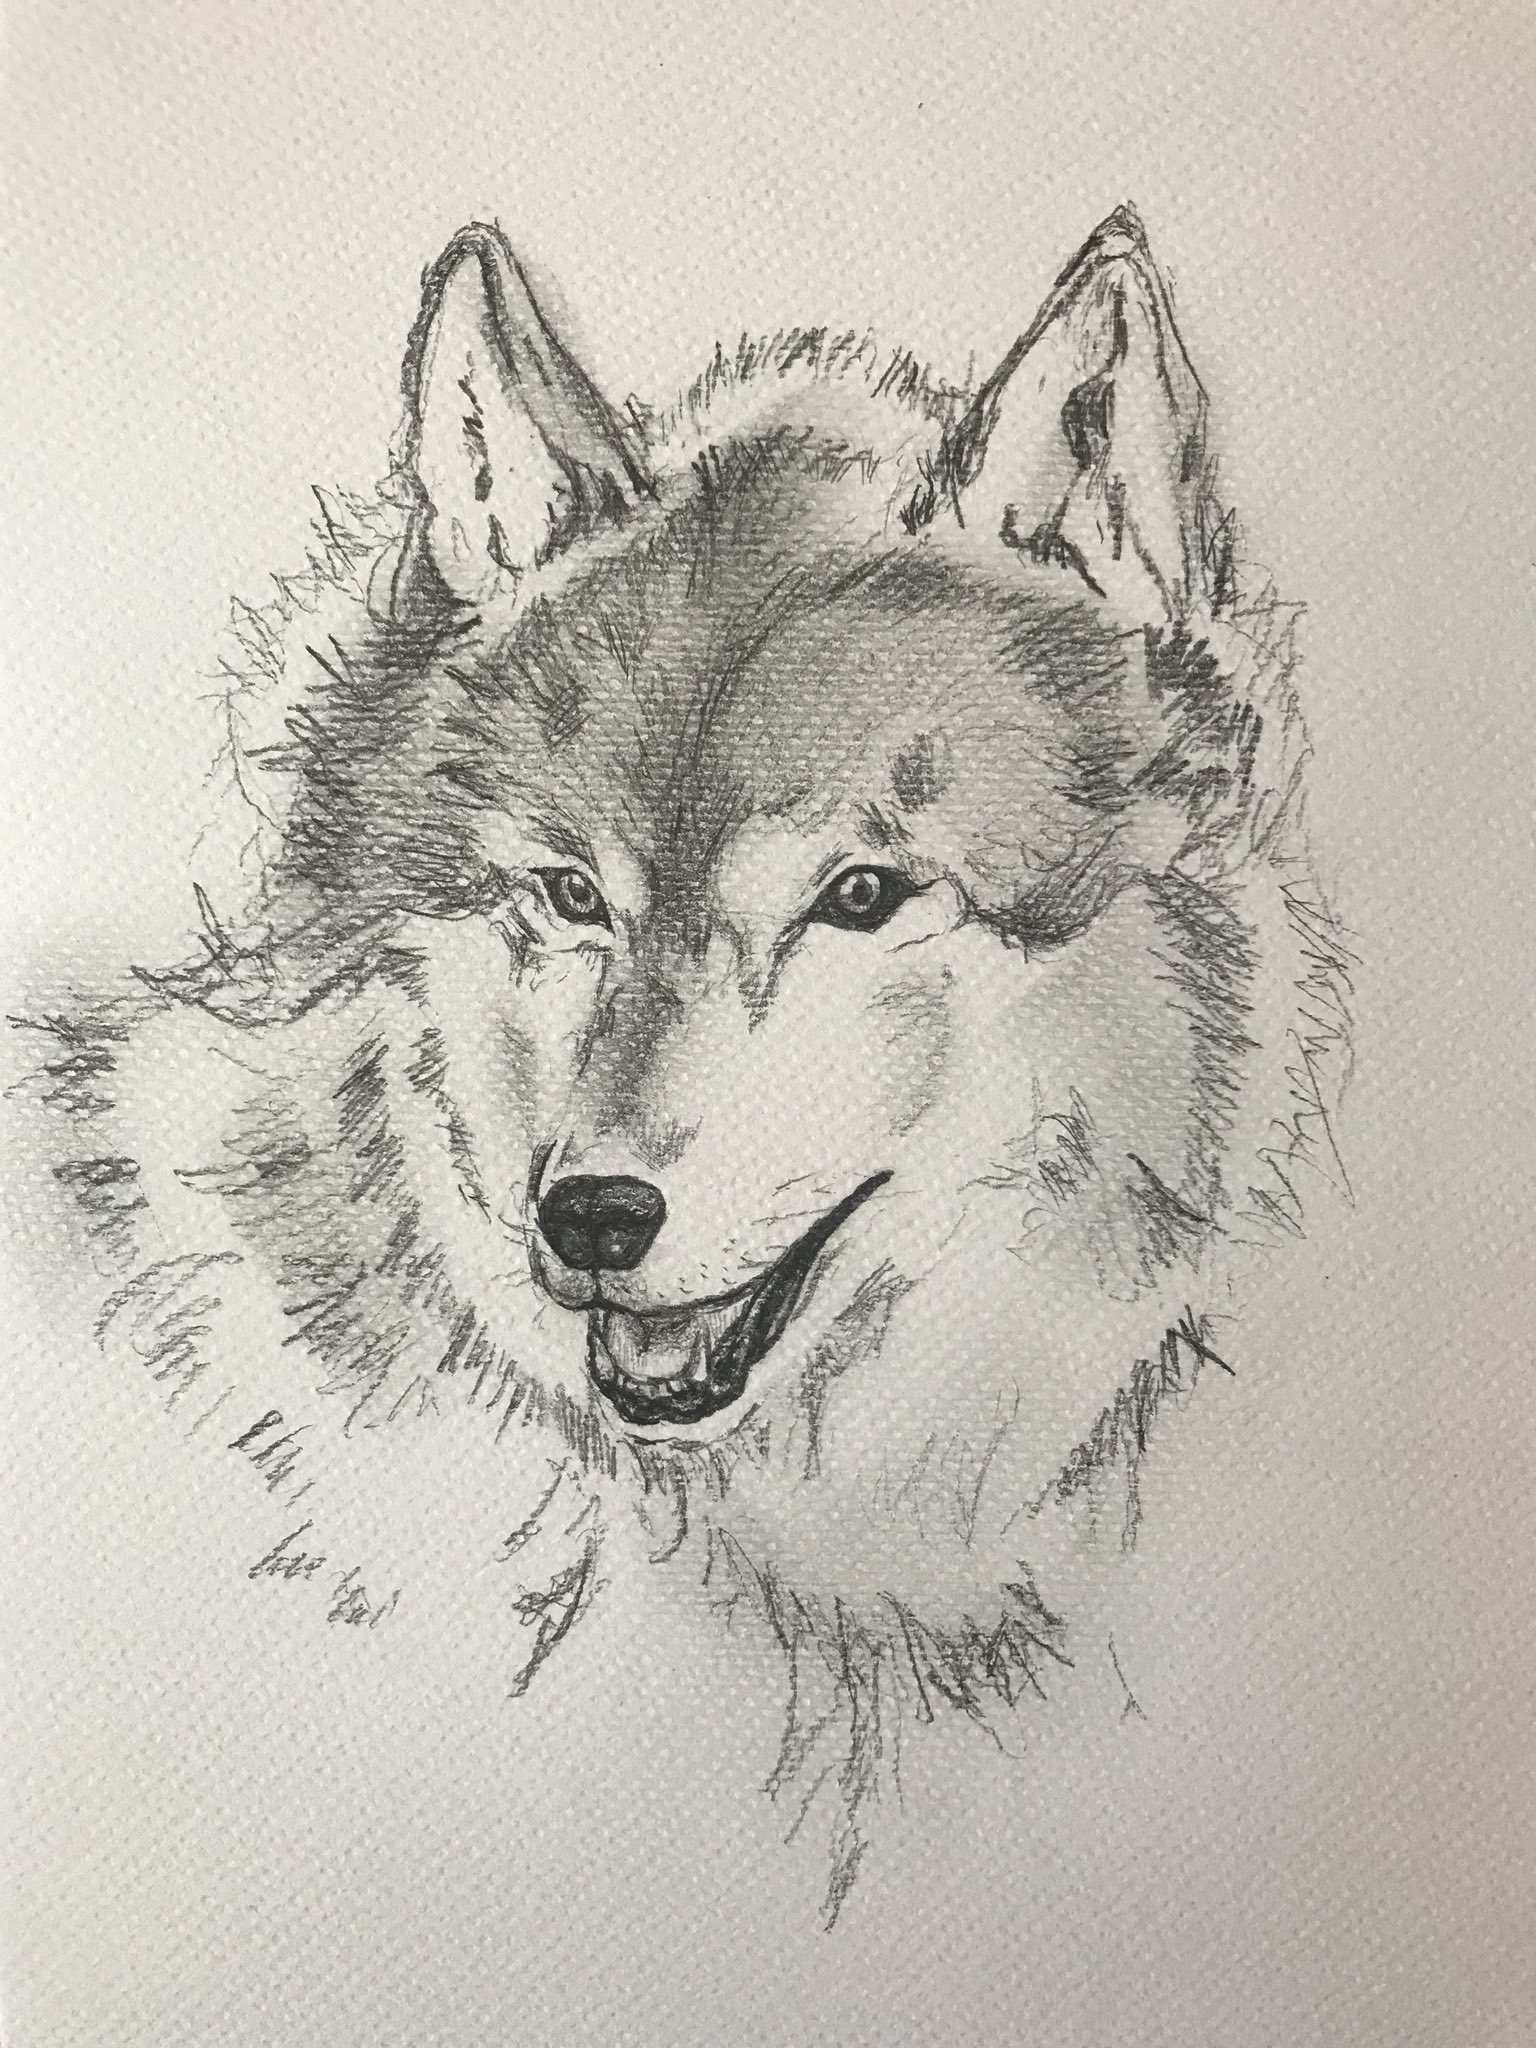 ジャスミン なぜか狼の絵 お絵かき オオカミイラスト 鉛筆画 T Co Mfozjwqk2e Twitter